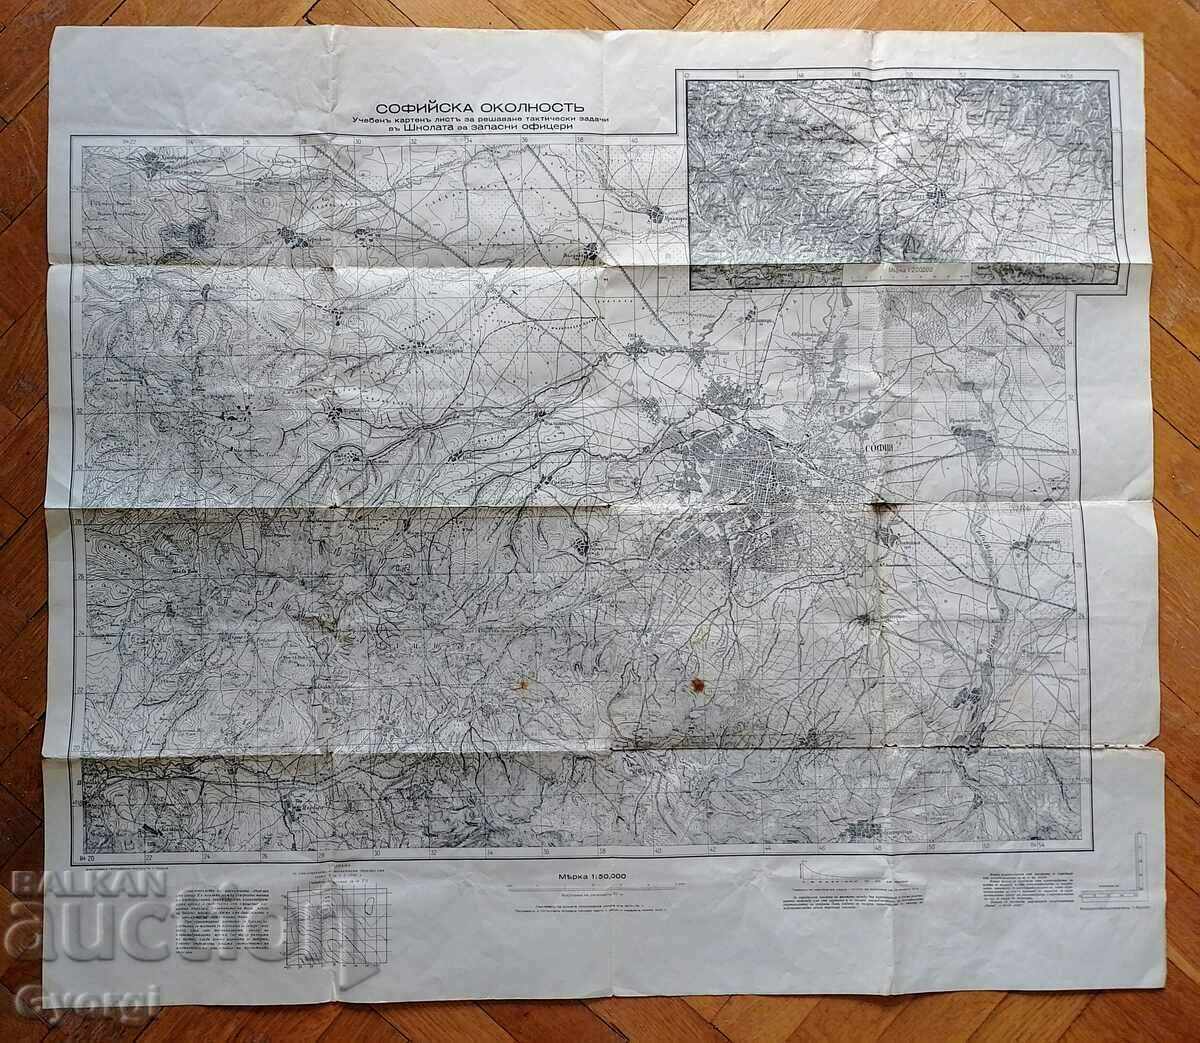 Military map of Sofia area